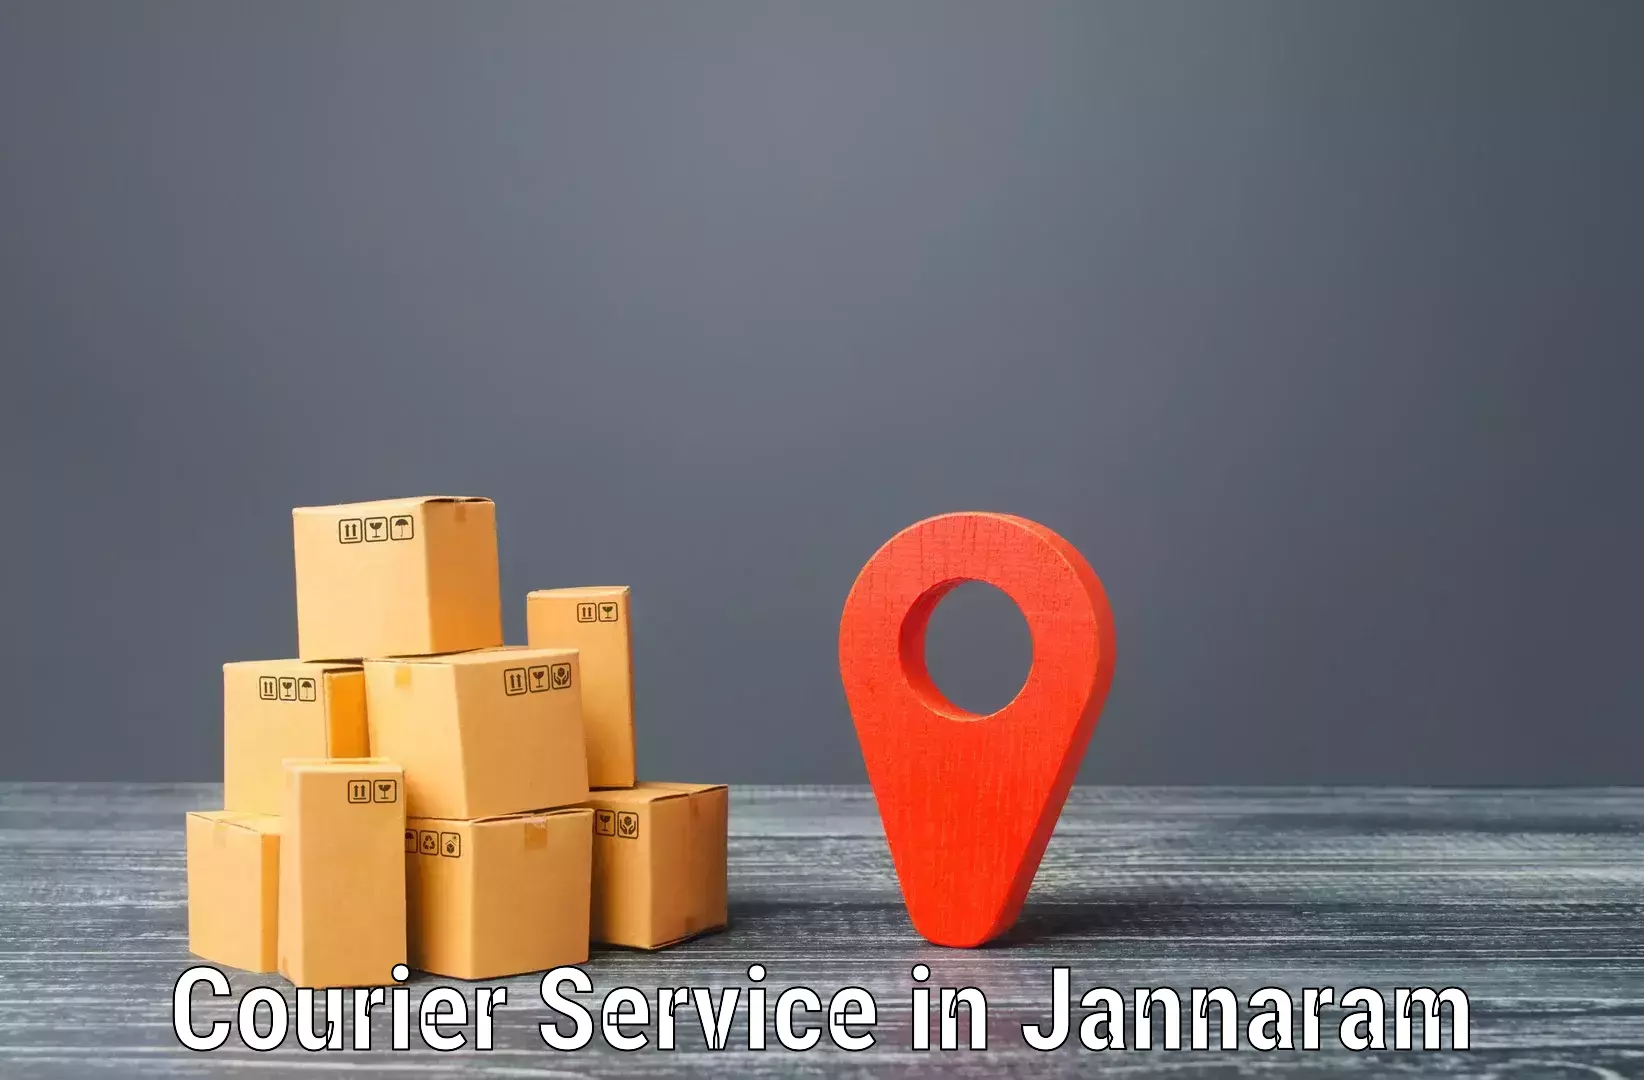 Urban courier service in Jannaram